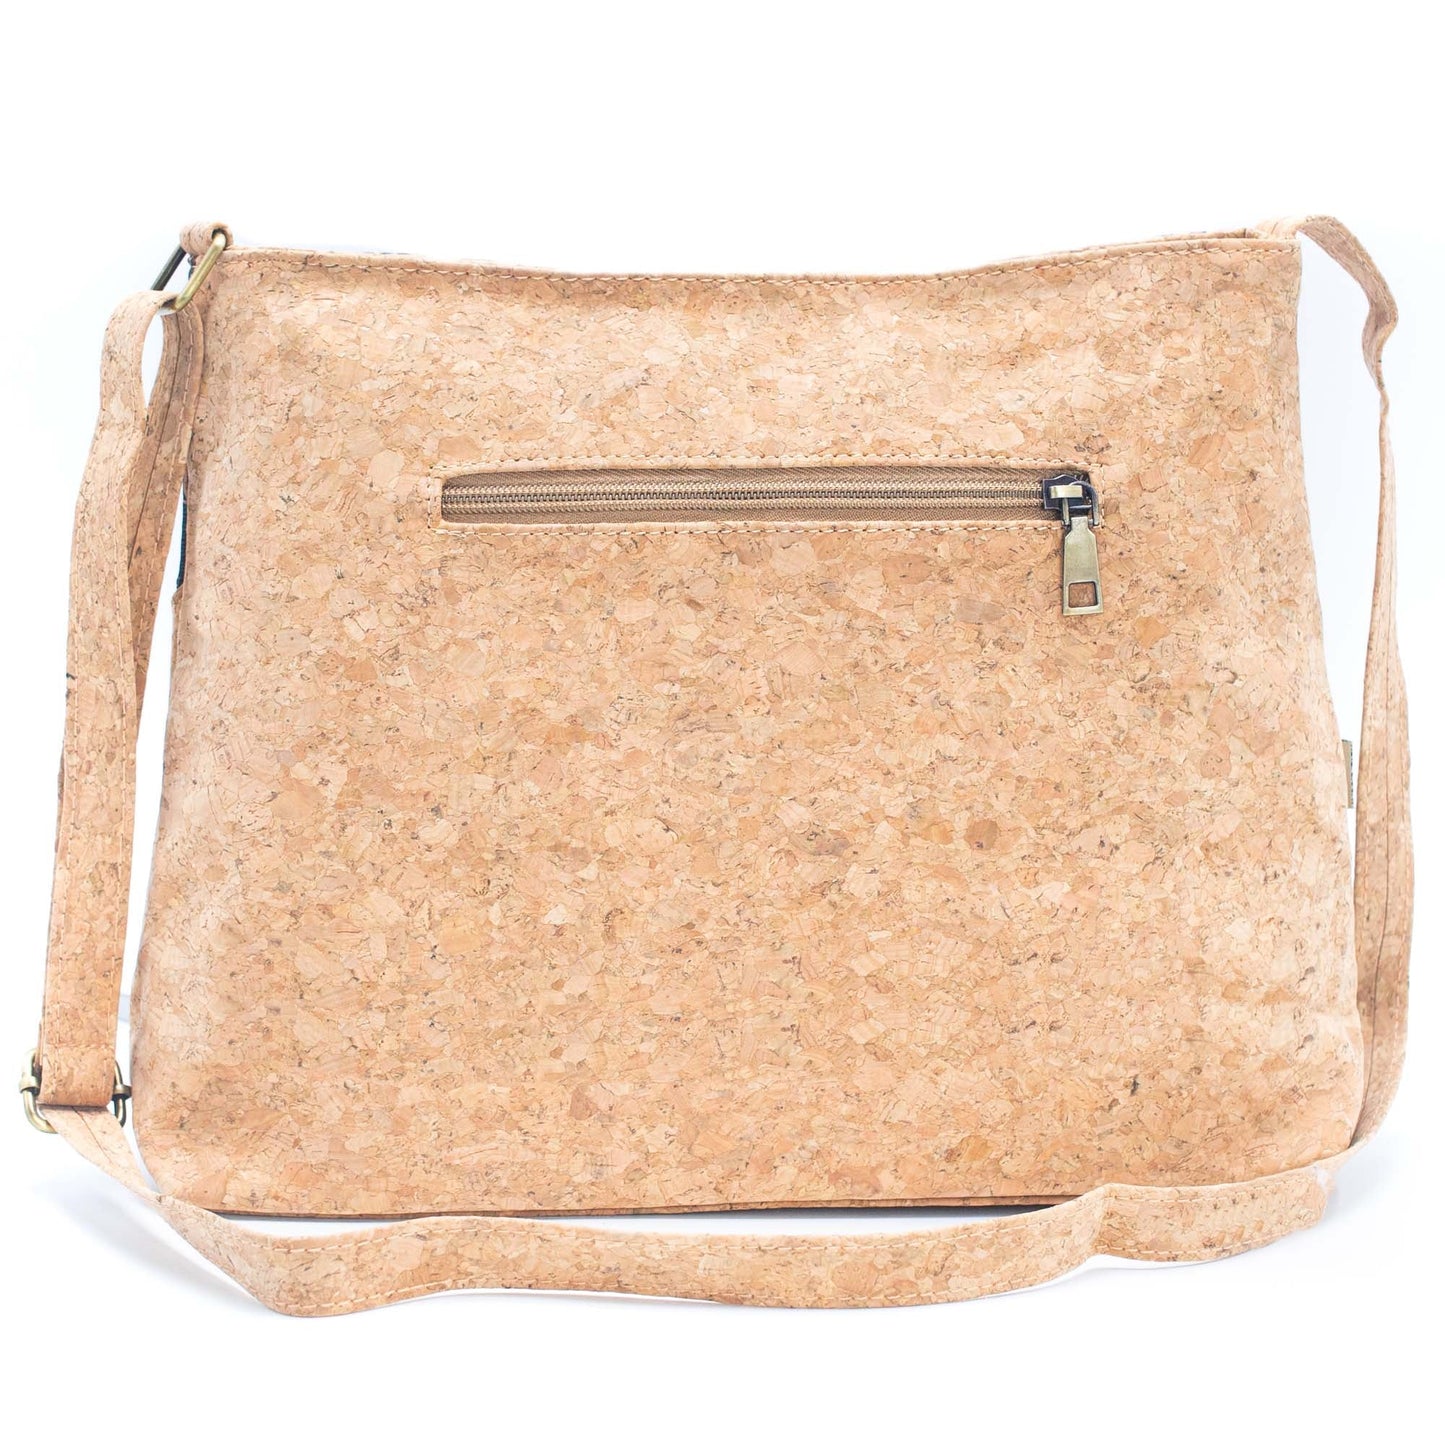 Natural Cork Shoulder Bag with Front Zipper Pocket and Mosaics Design